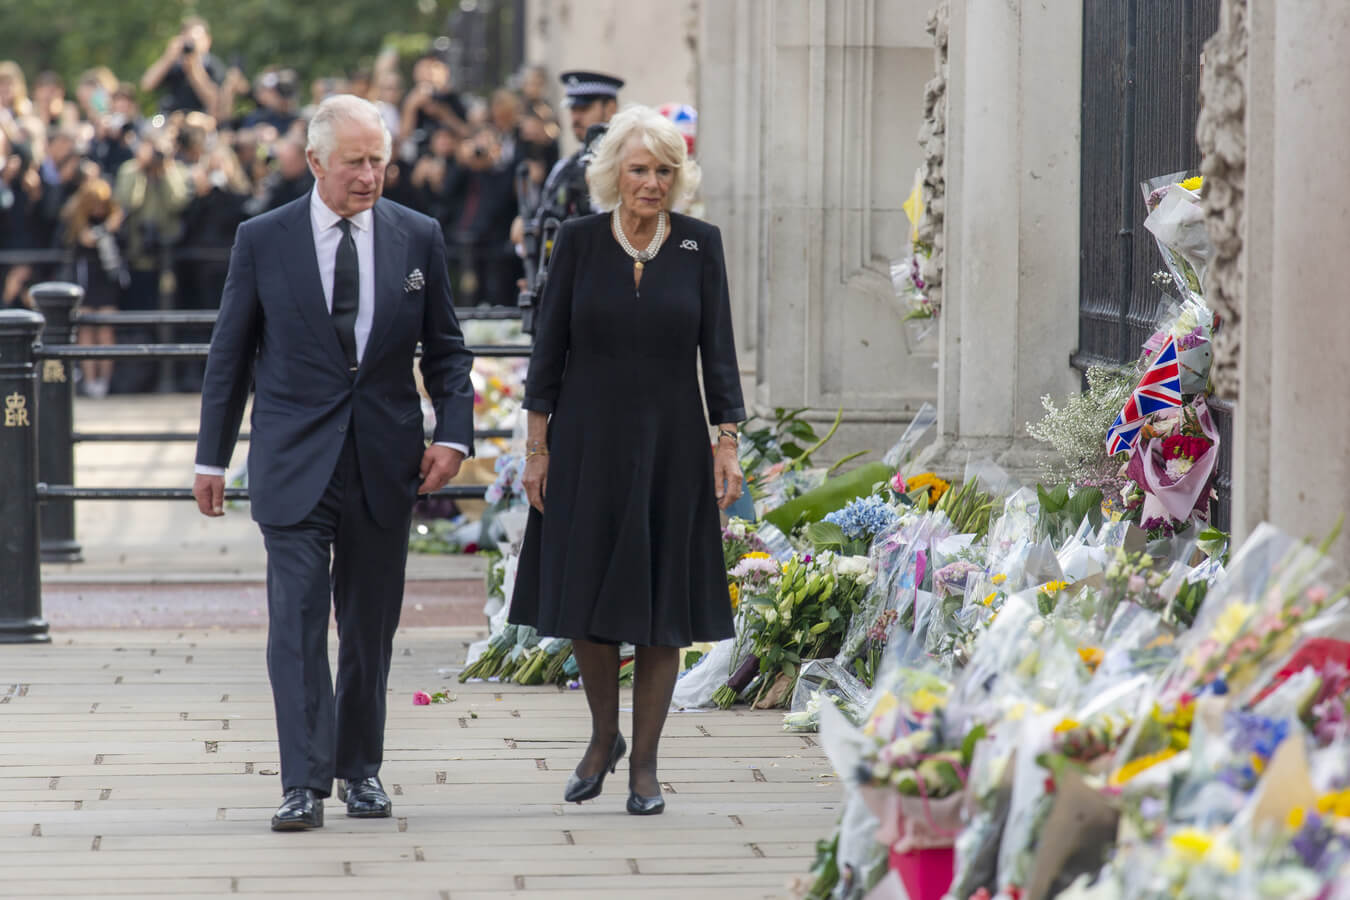 الملك تشارلز الثالث ودوقة كورنوال كاميلا ، قرينة ملكة المملكة المتحدة يشاهدان الزهور والرسائل خارج قصر باكنغهام بعد وفاة الملكة إليزابيث في لندن ، المملكة المتحدة في 9 سبتمبر 2022. وكالة )